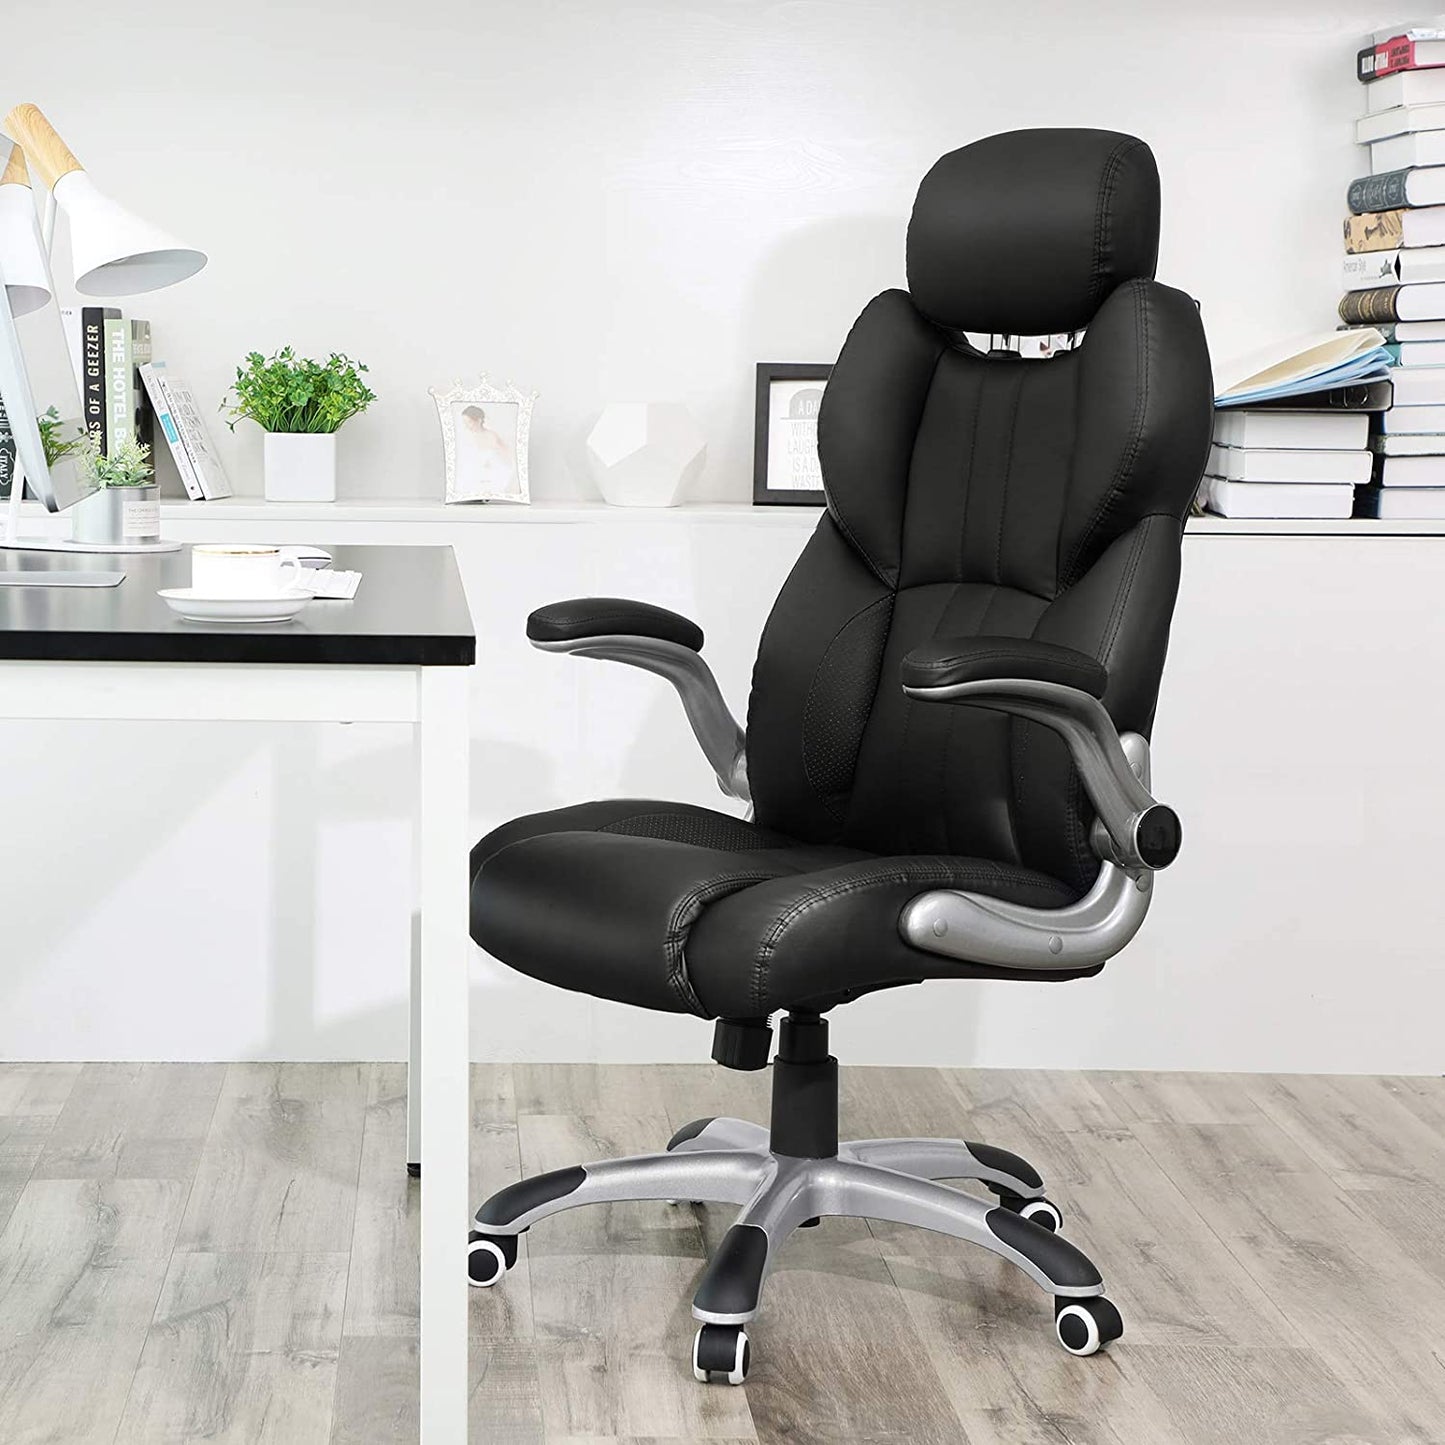 Chaise de bureau Nancy's Fordham - Chaise pivotante ergonomique - Chaises de bureau